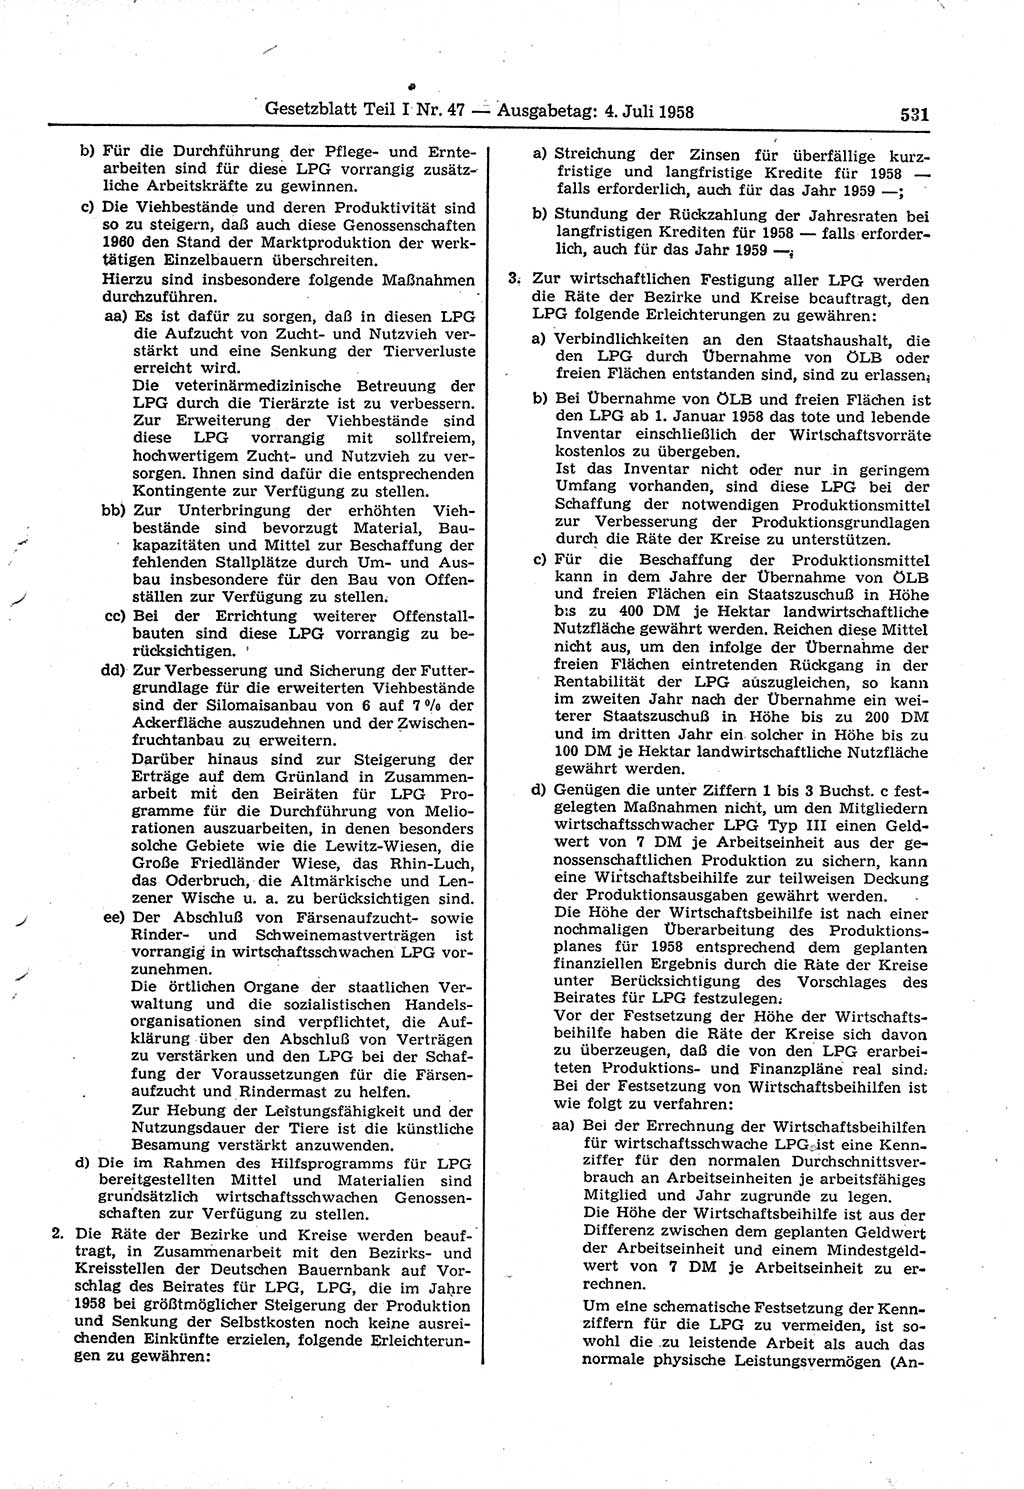 Gesetzblatt (GBl.) der Deutschen Demokratischen Republik (DDR) Teil Ⅰ 1958, Seite 531 (GBl. DDR Ⅰ 1958, S. 531)